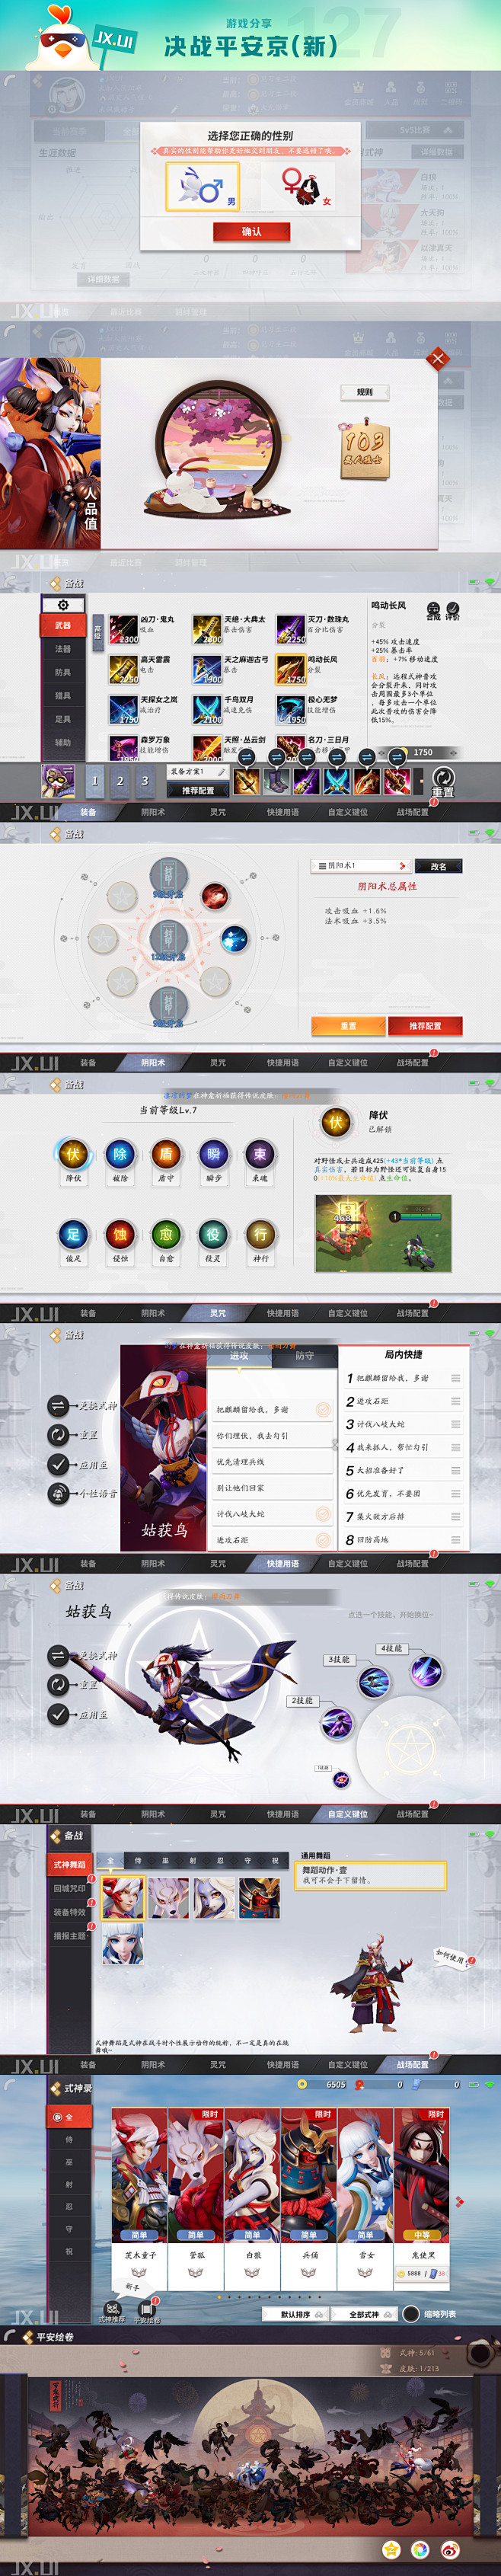 决战平安京-3 全面屏 UI2.0
更多...